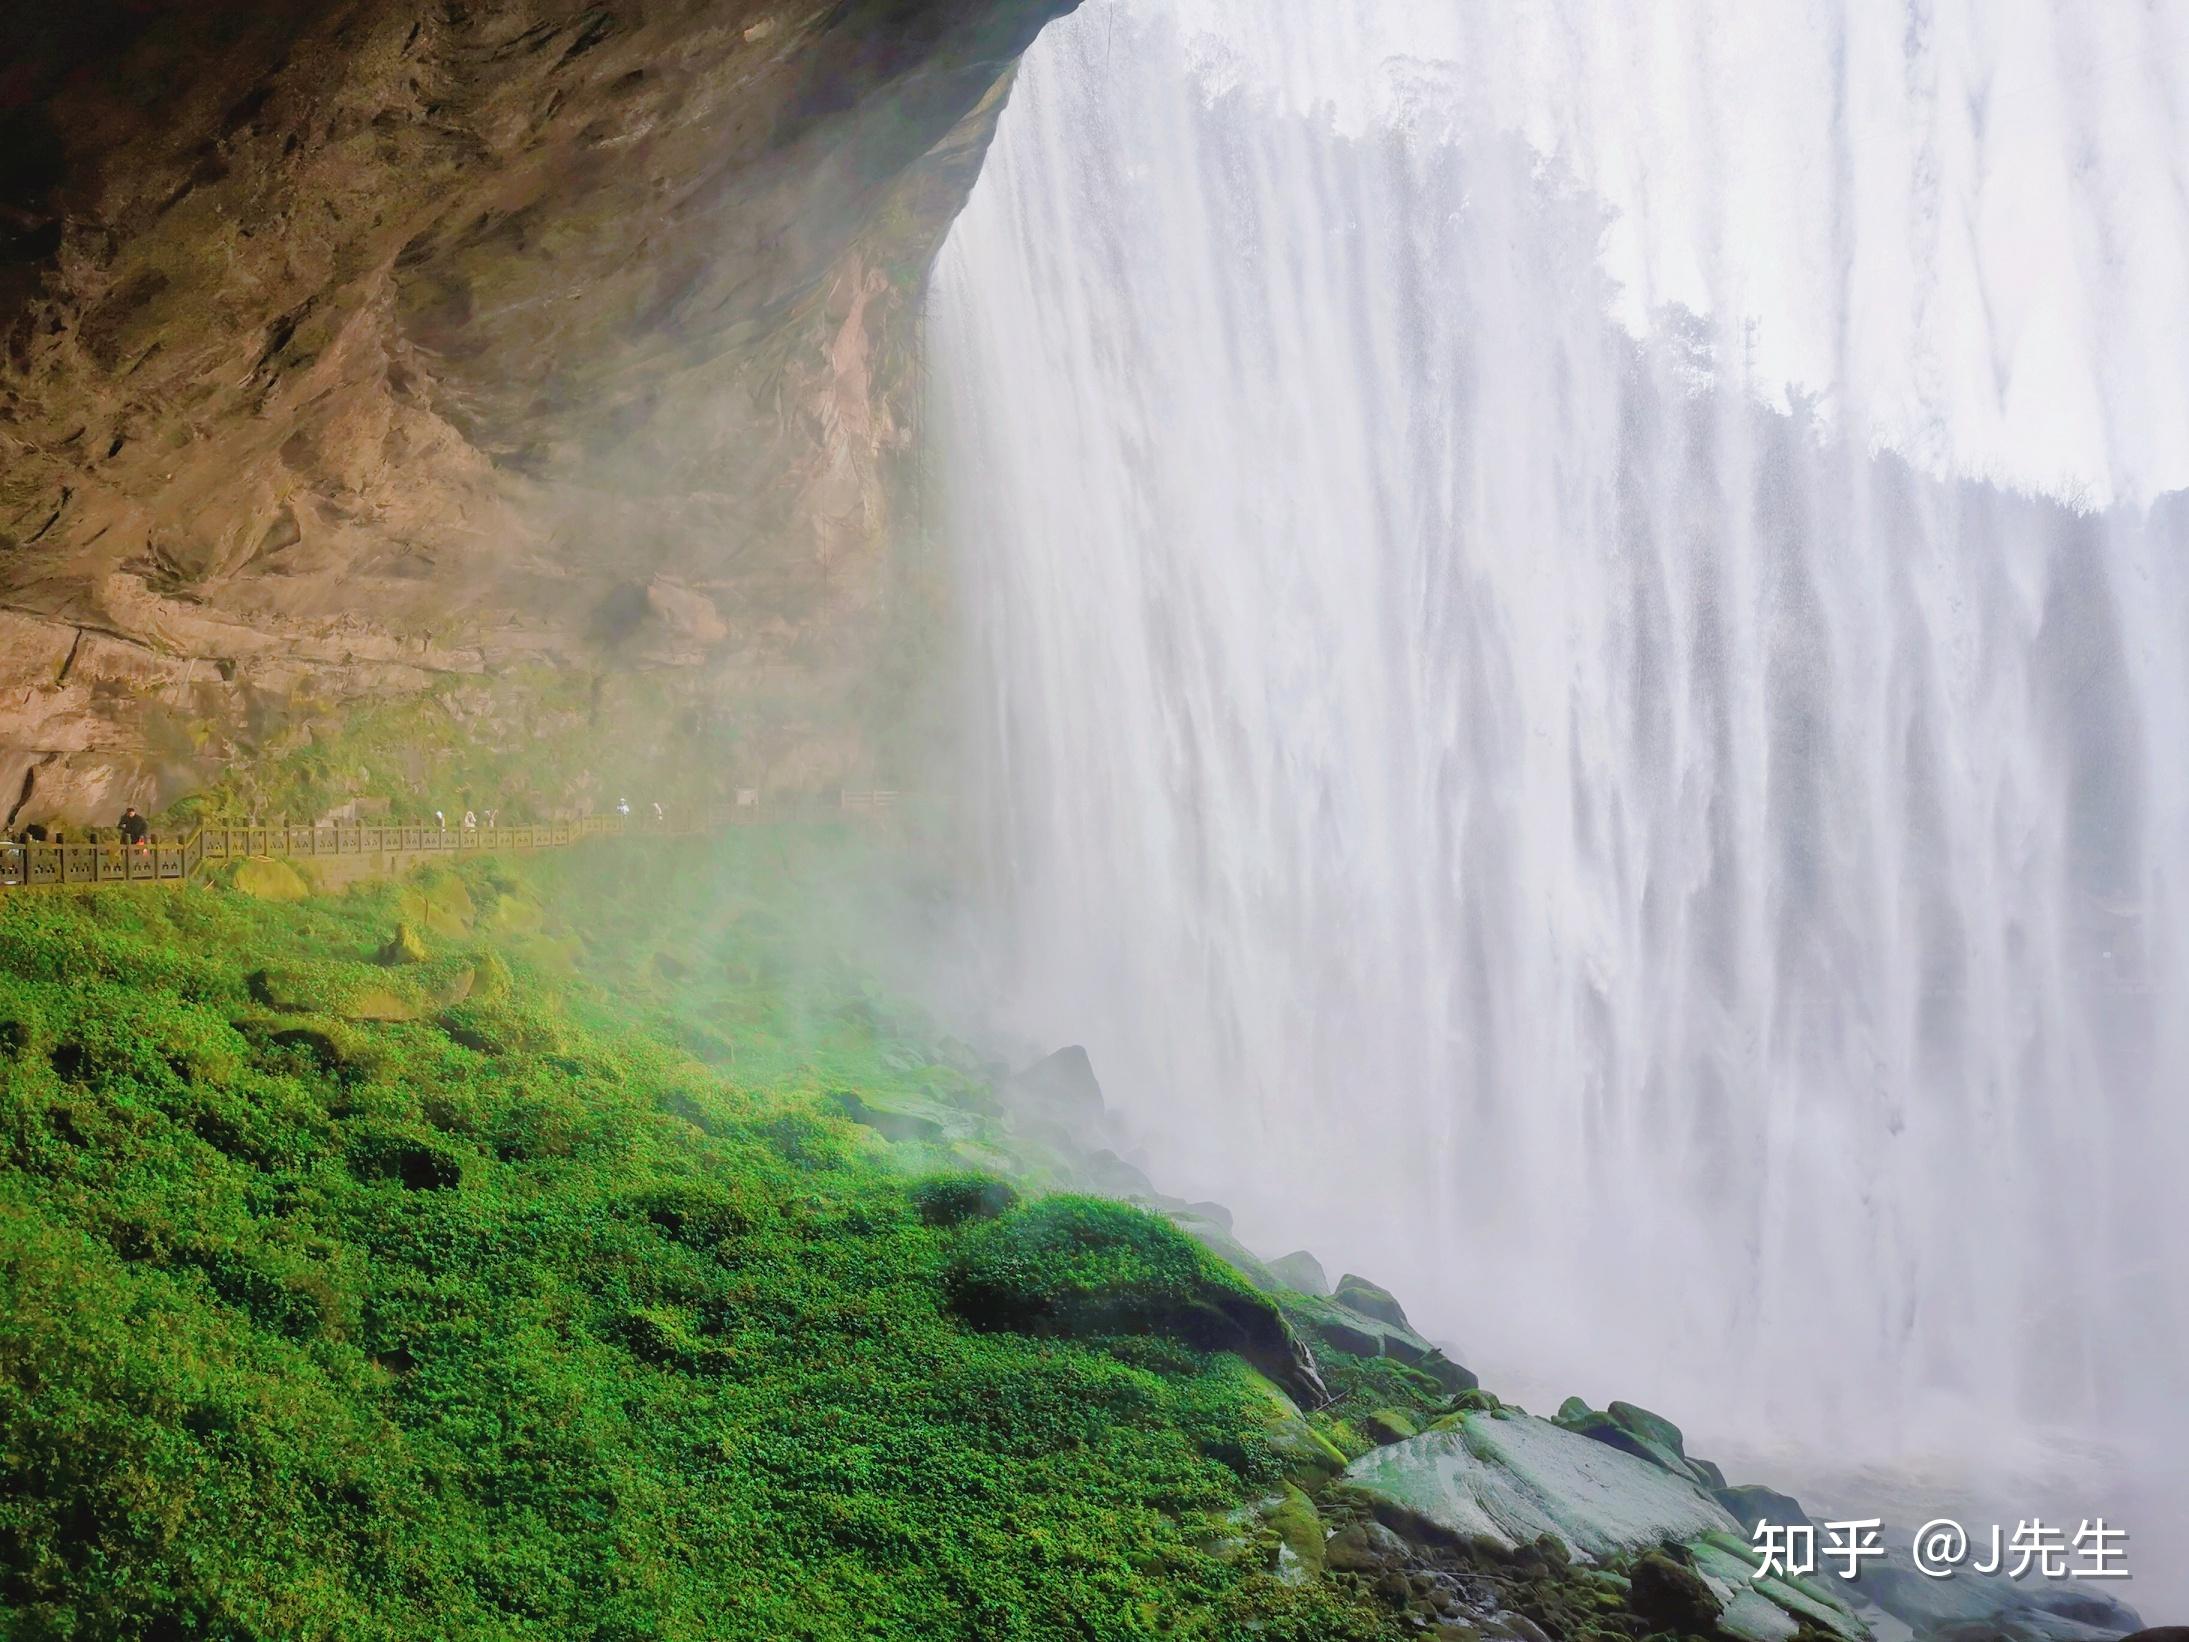 【携程攻略】重庆万州大瀑布景点,万州大瀑布景区景色非常的美，瀑布的水流飞泻而下非常壮观。除了自然…